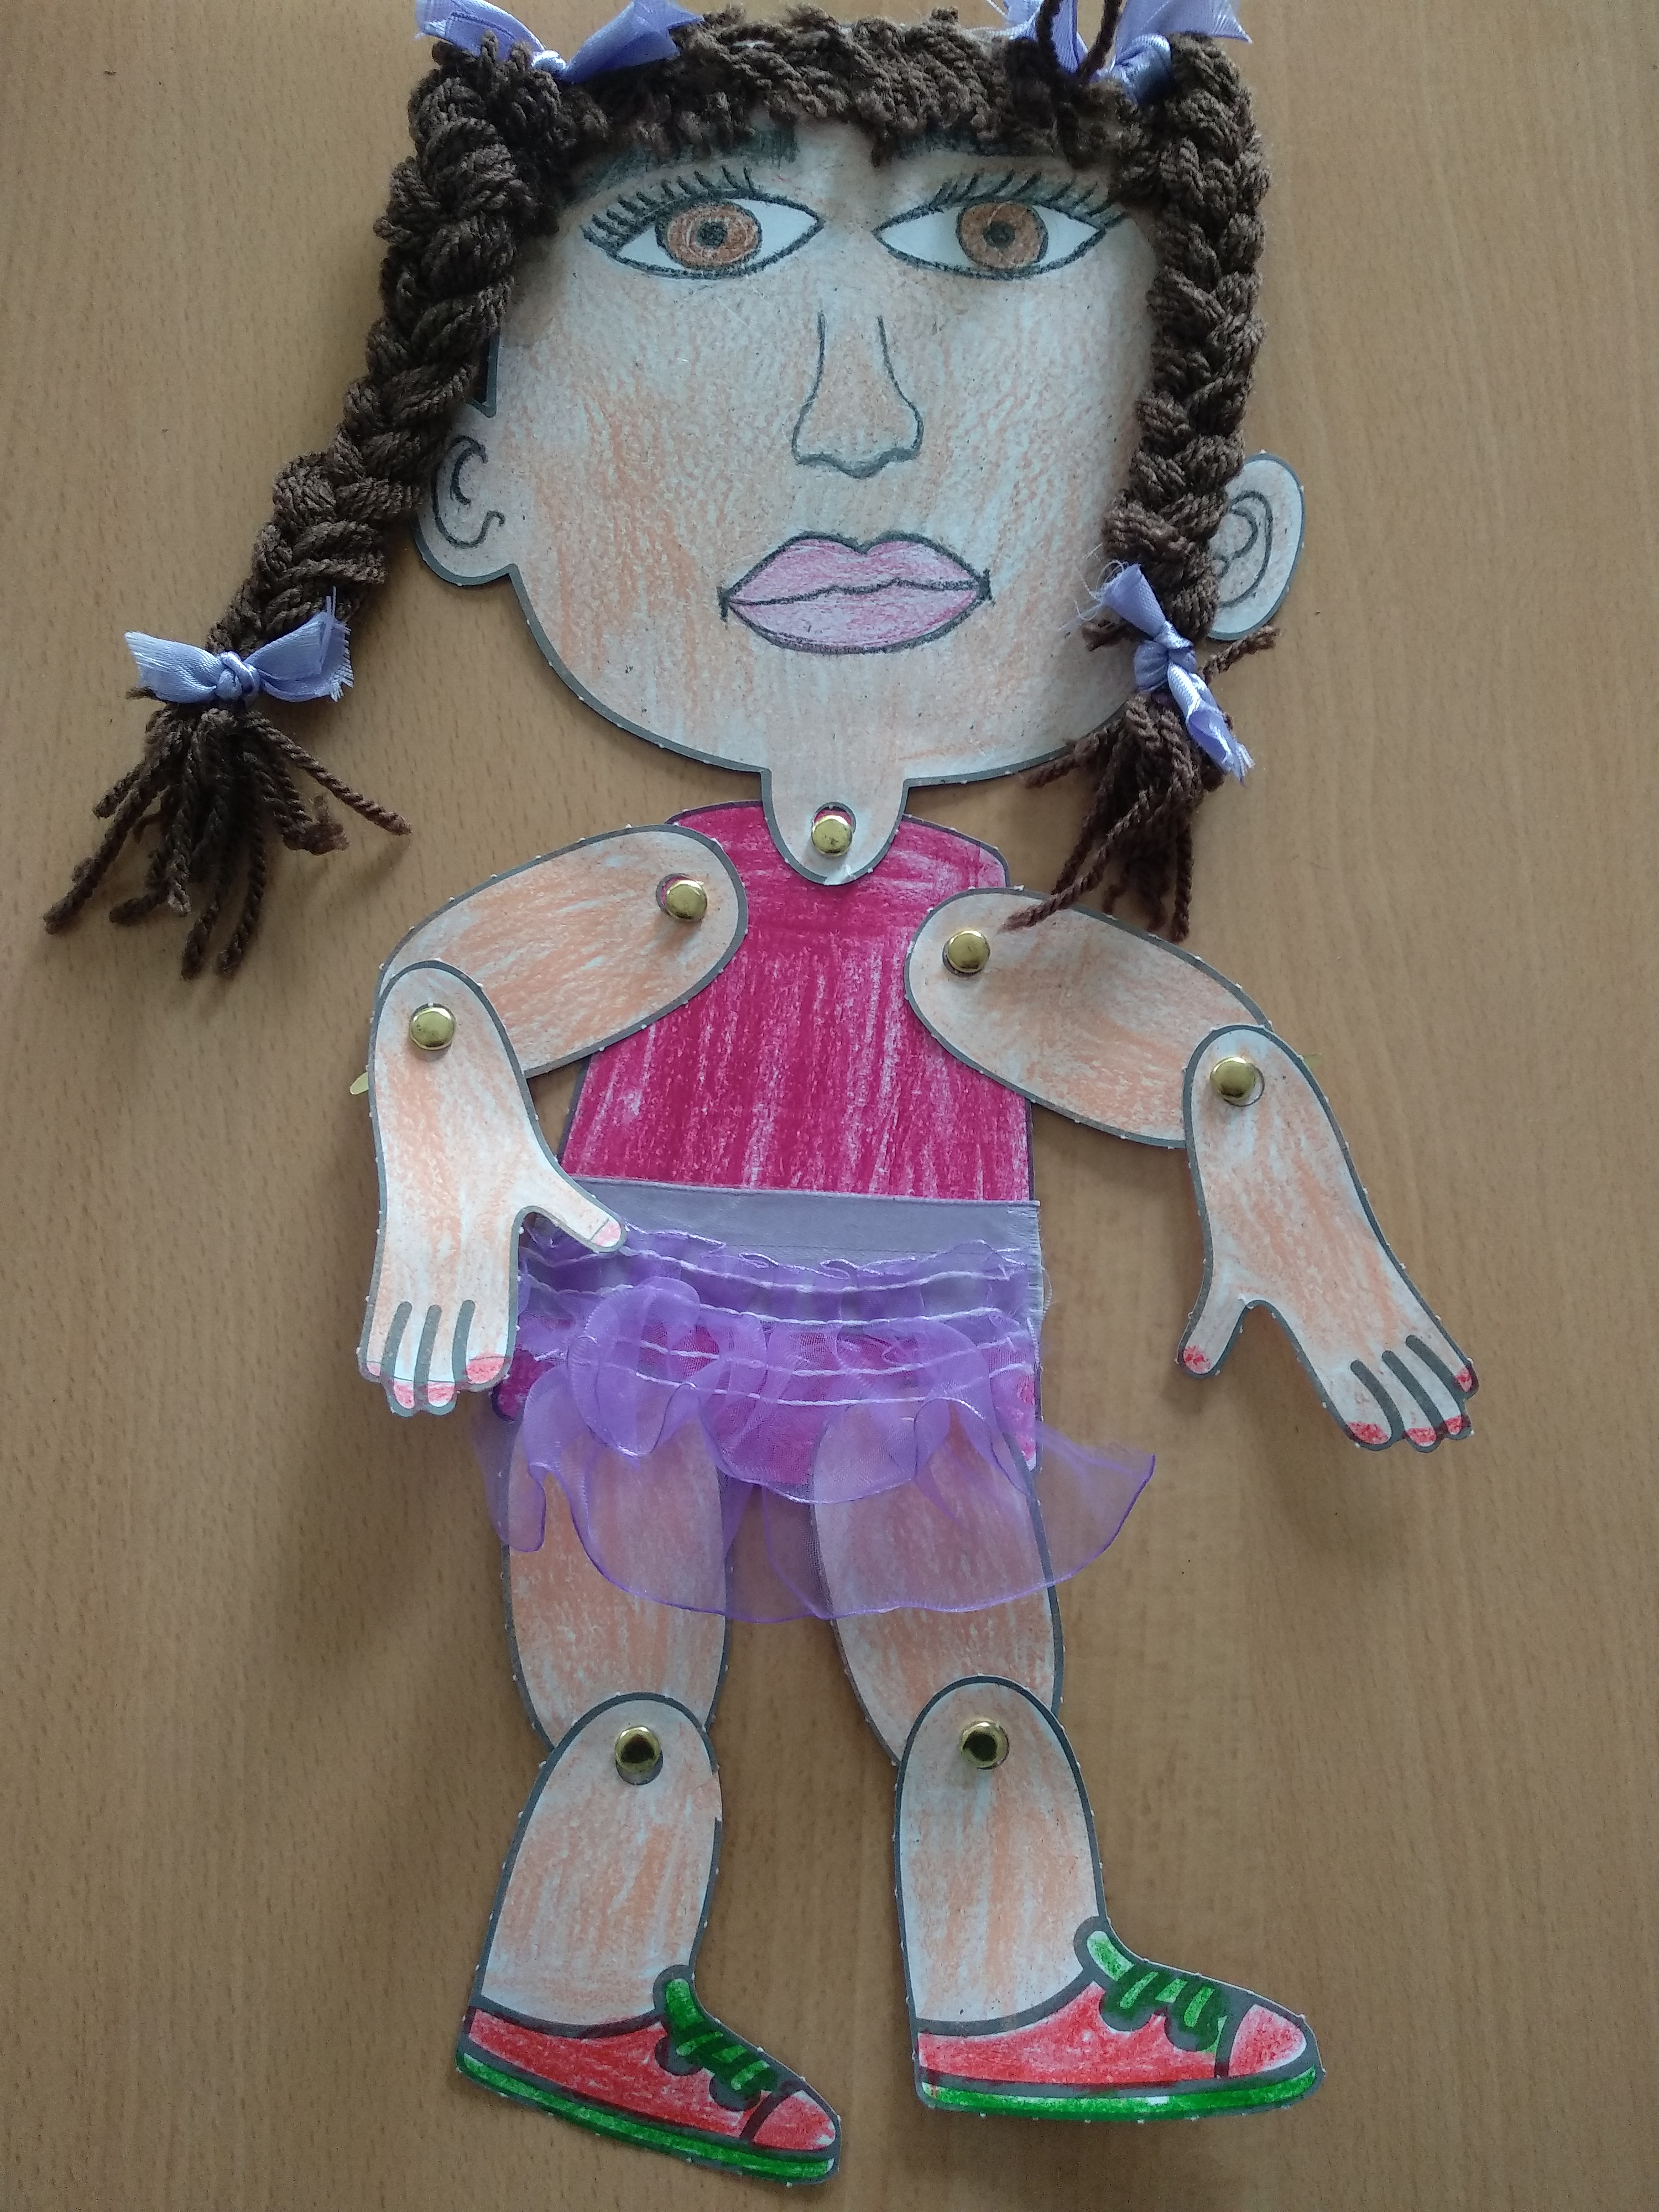 La imagen muestra una marioneta de una niña con trenzas.